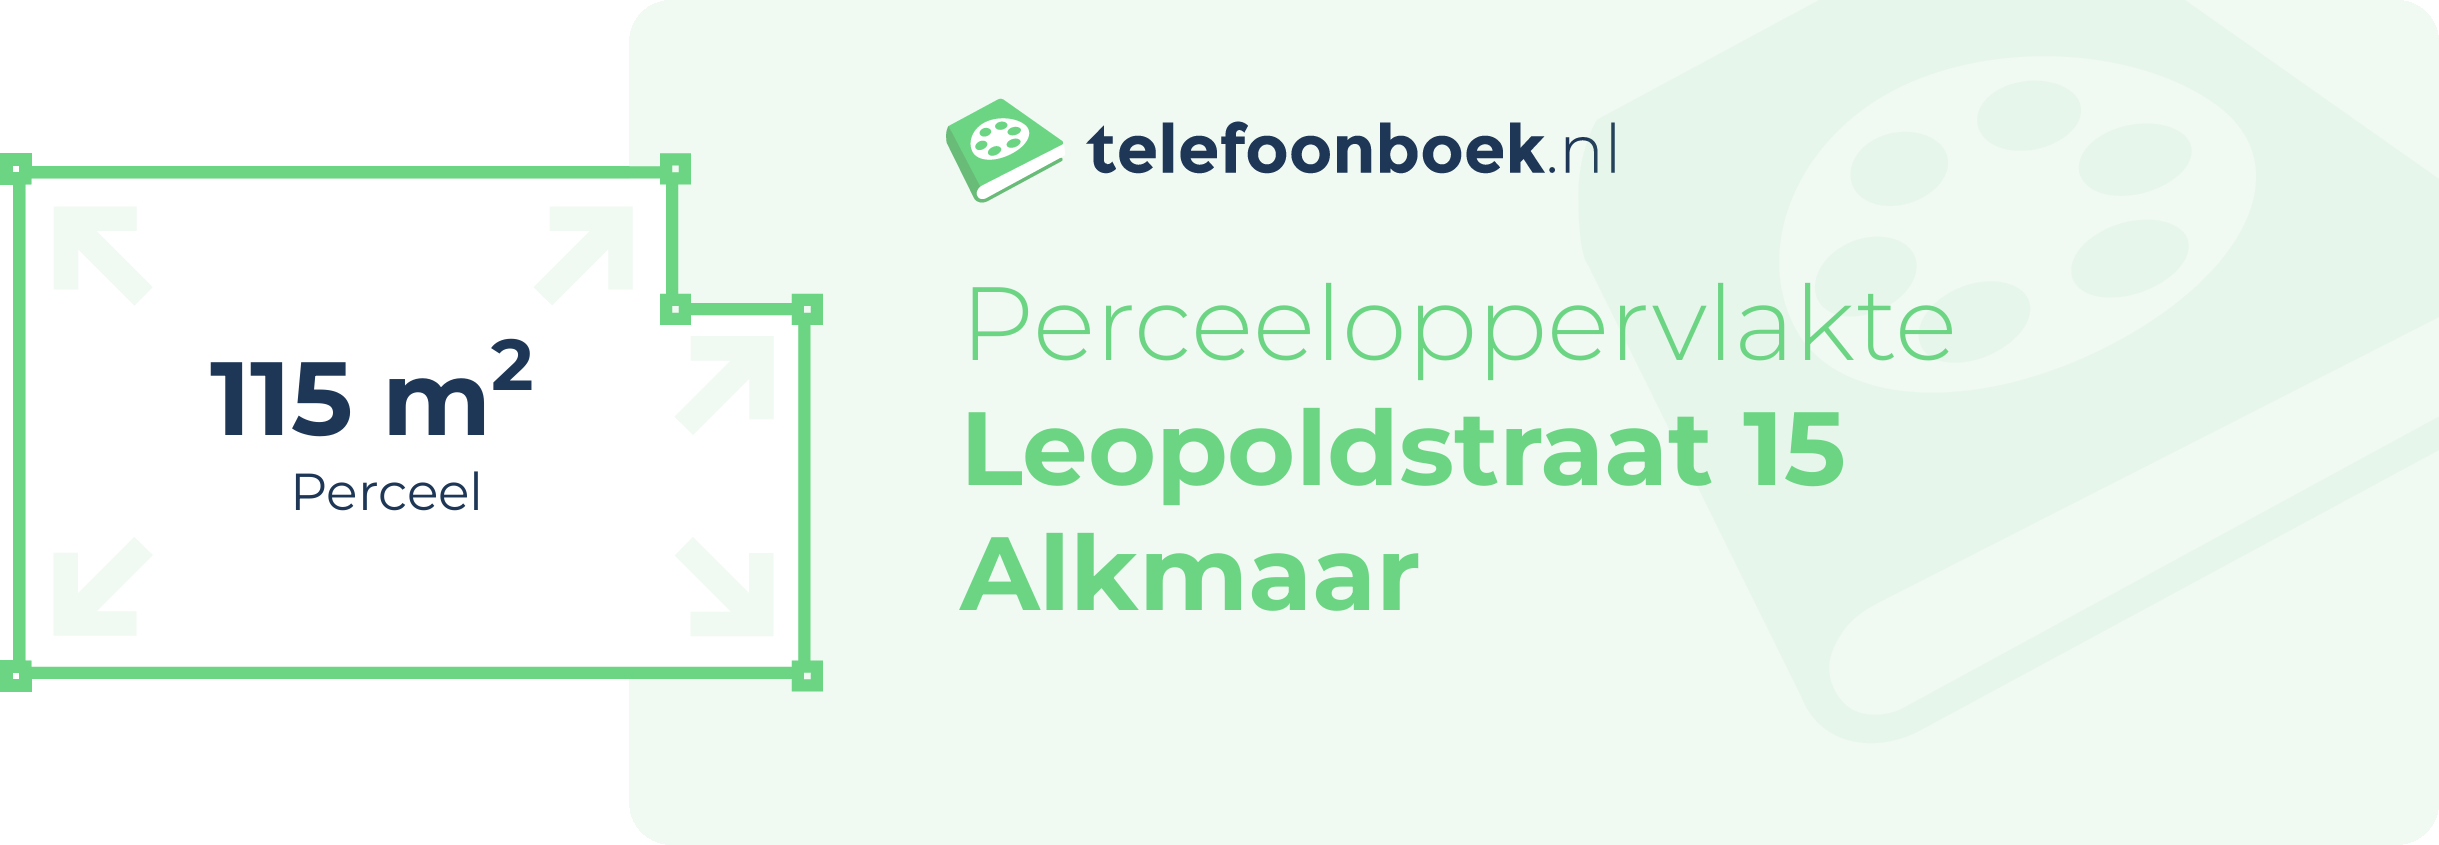 Perceeloppervlakte Leopoldstraat 15 Alkmaar